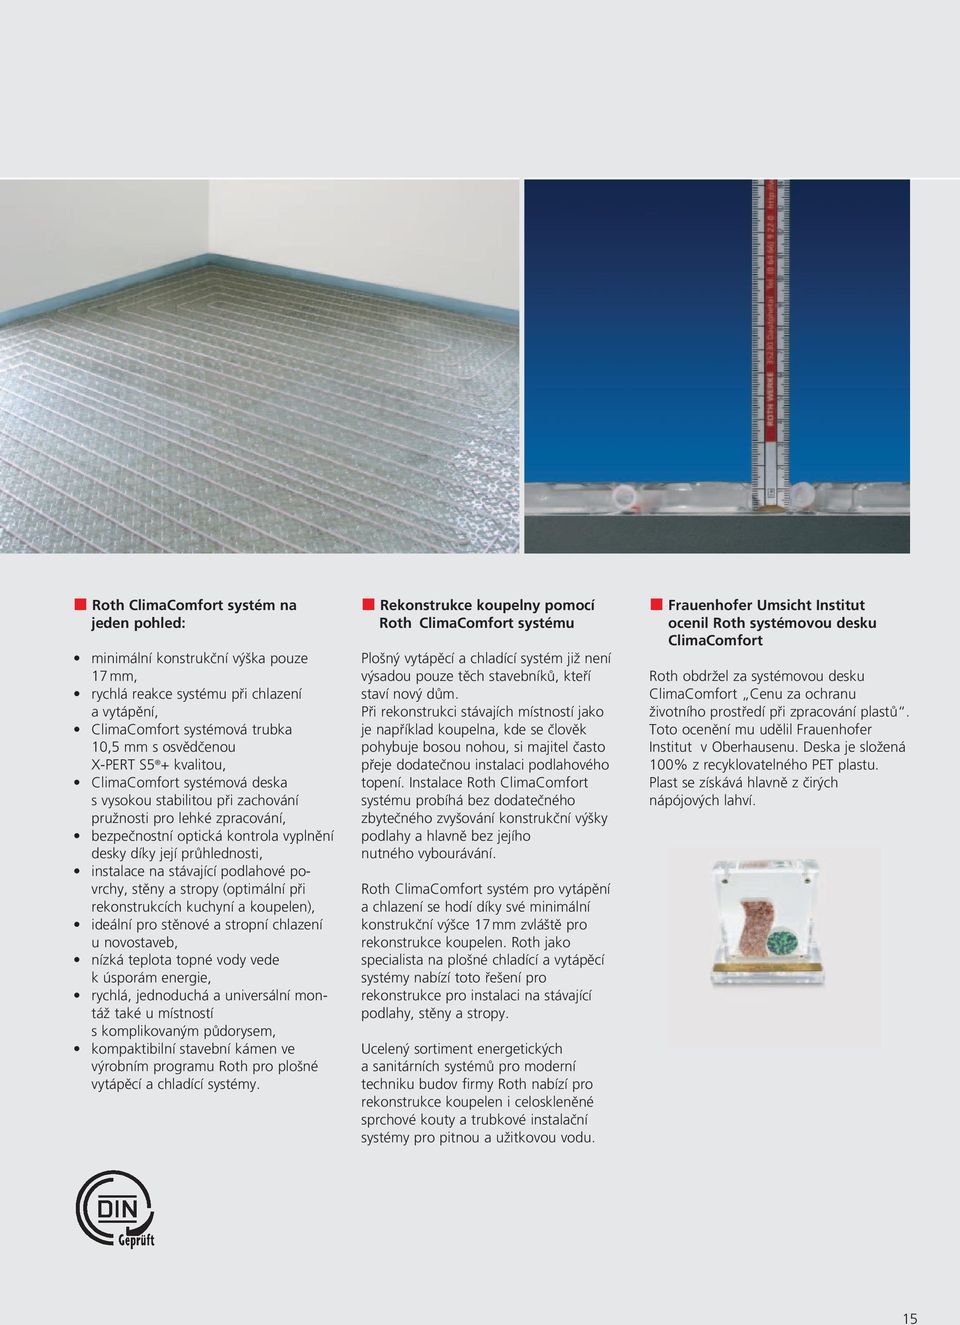 podlahové povrchy, stěny a stropy (optimální při rekonstrukcích kuchyní a koupelen), ideální pro stěnové a stropní chlazení u novostaveb, nízká teplota topné vody vede k úsporám energie, rychlá,